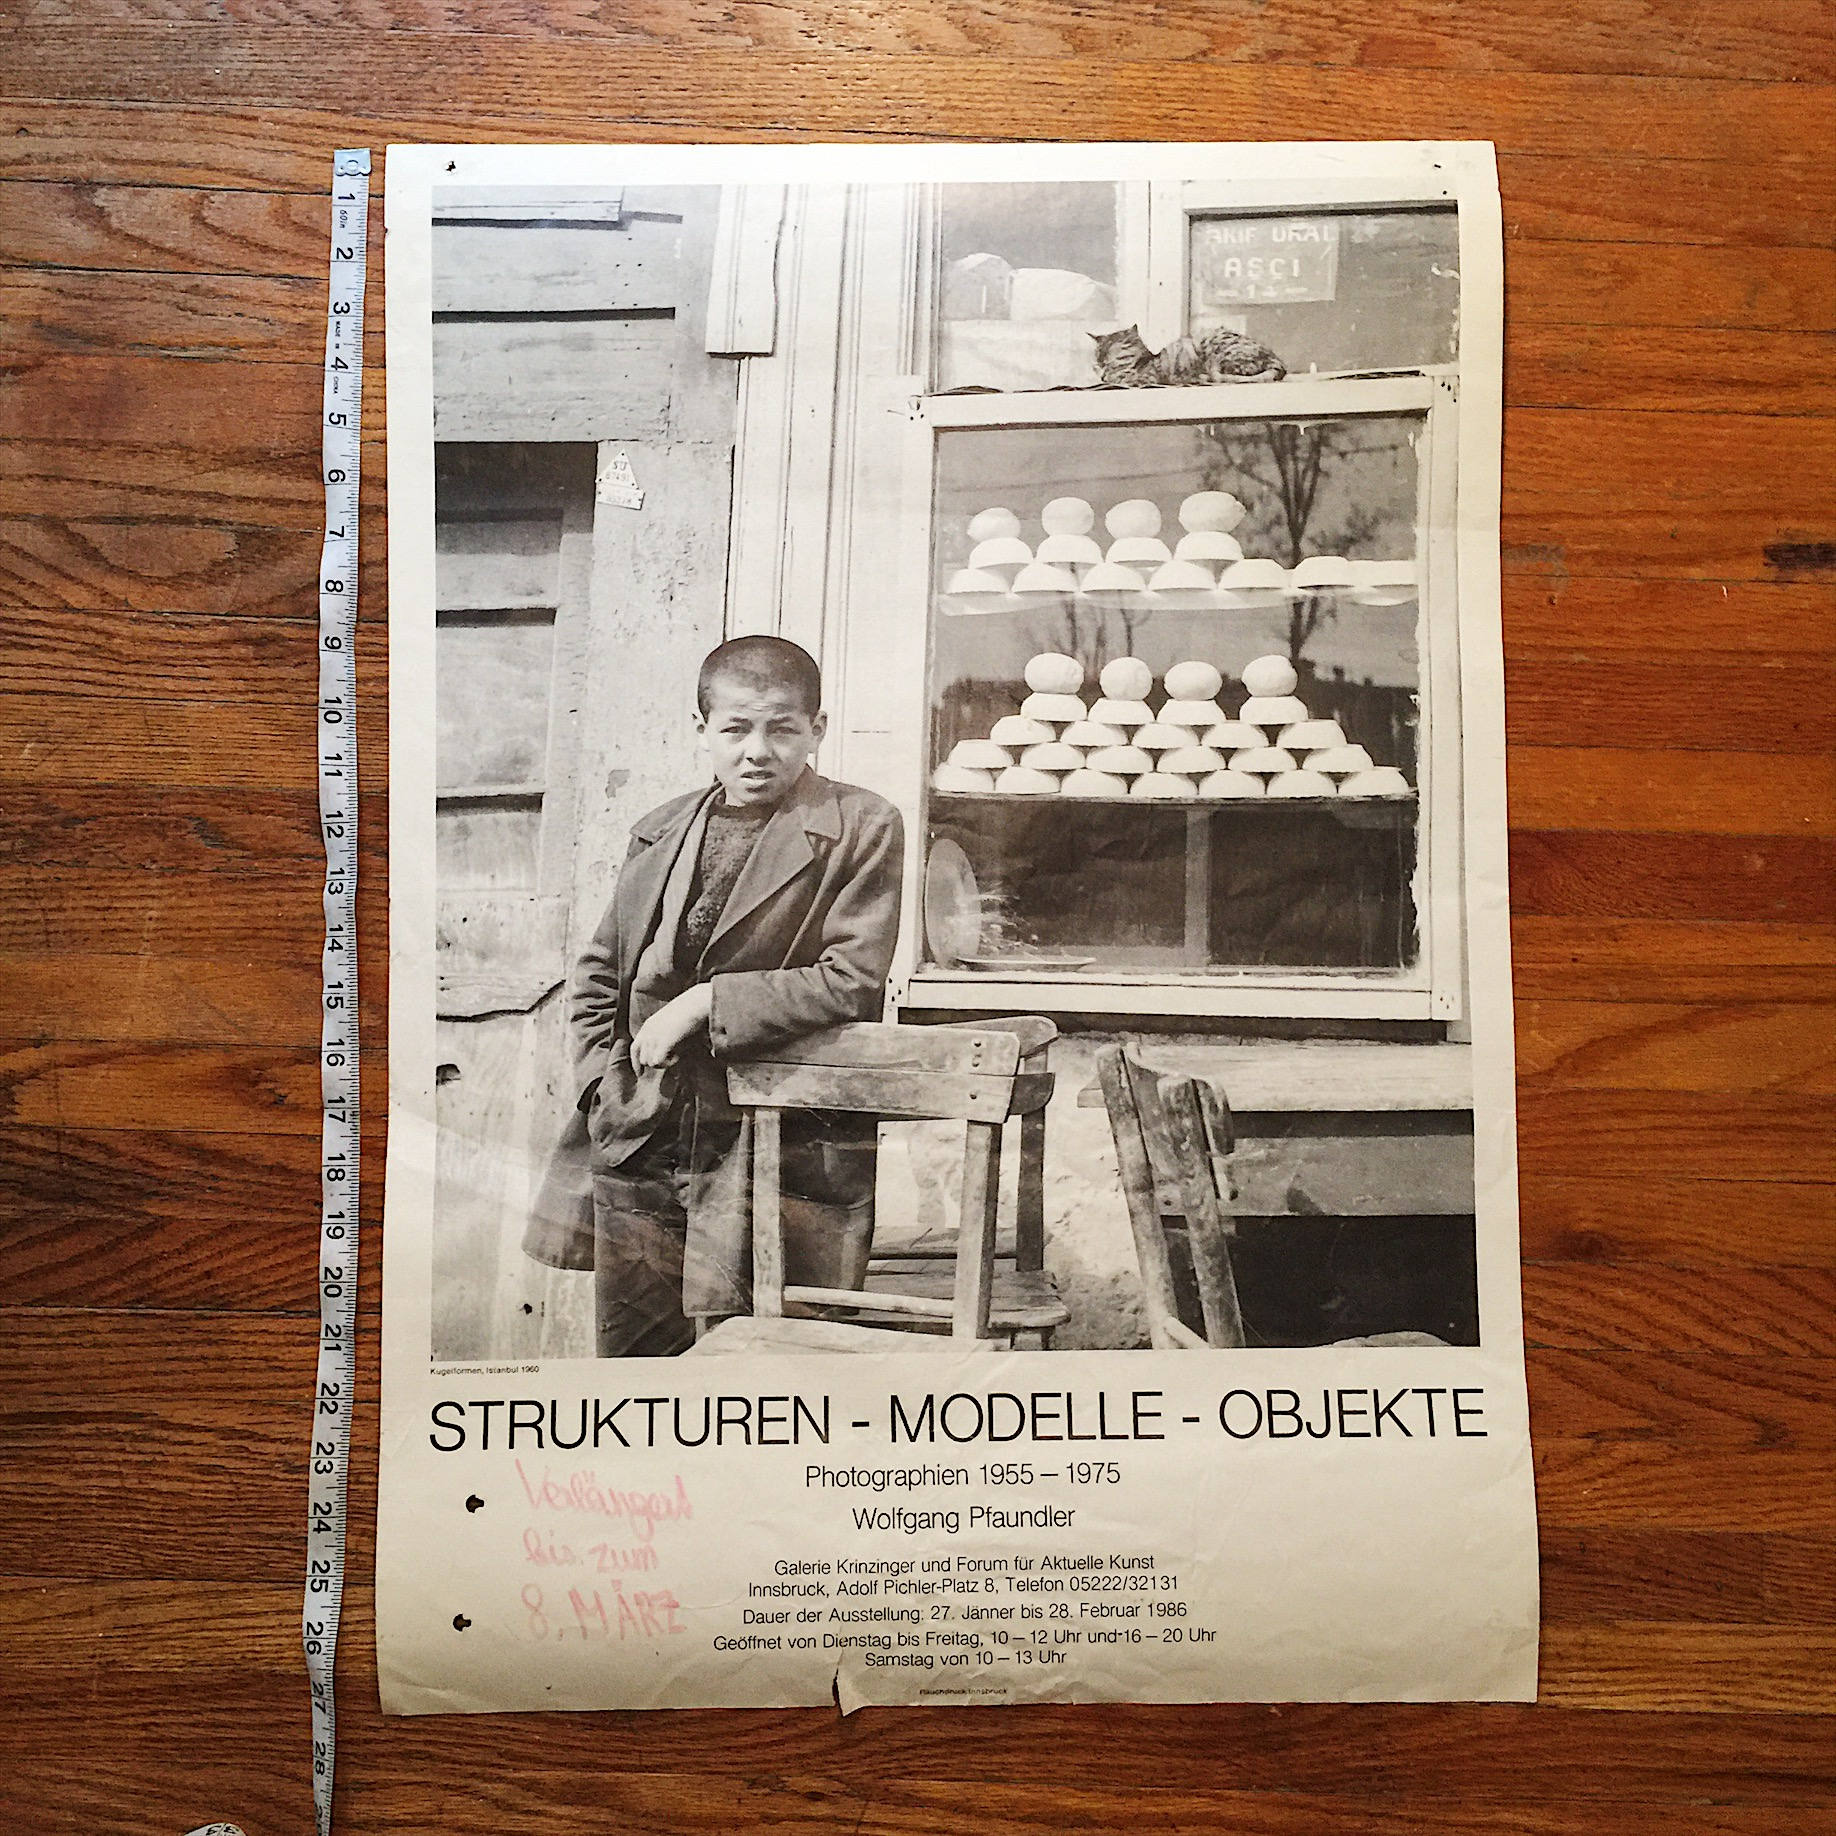 Rare Wolfgang Pfaundler Exhibit Poster - 1986 - Strukturen - Modelle - Objekte - Rauchdruck Innsbruck - Rare Art Poster - Vintage Art Poster